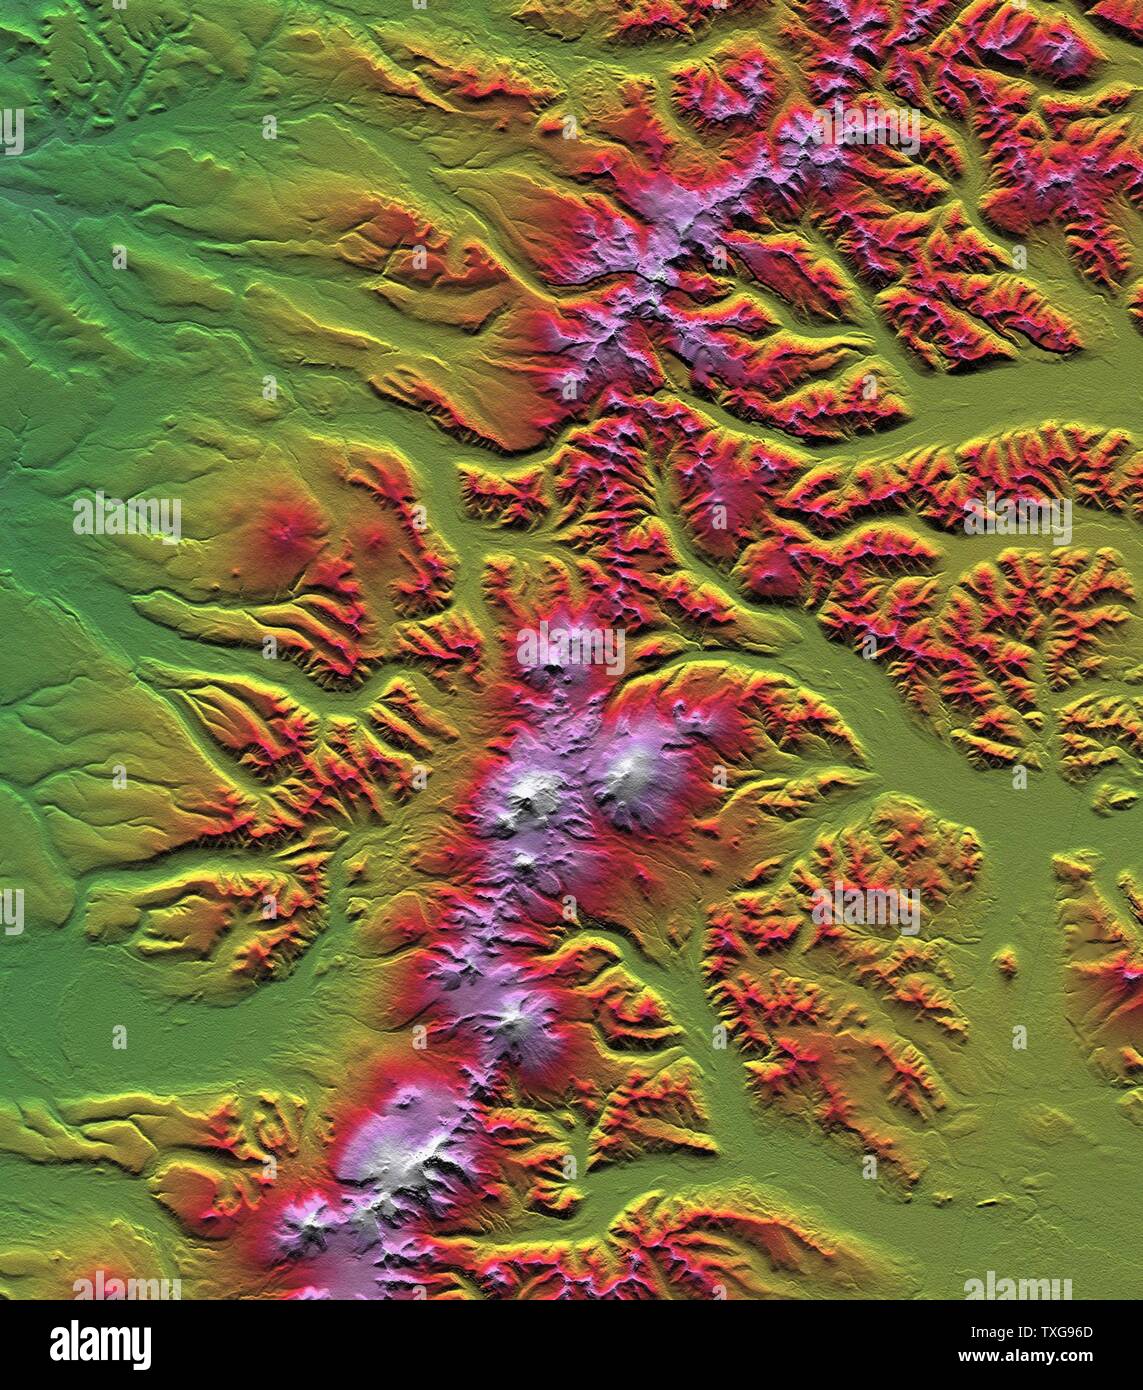 Sredinny Khrebet, péninsule du Kamchatka, Russie, illustré dans cette image créée à partir d'une analyse d'un modèle préliminaire en fonction des premières données recueillies Crédit NASA Earth Sciences Cartographie Géologie Banque D'Images